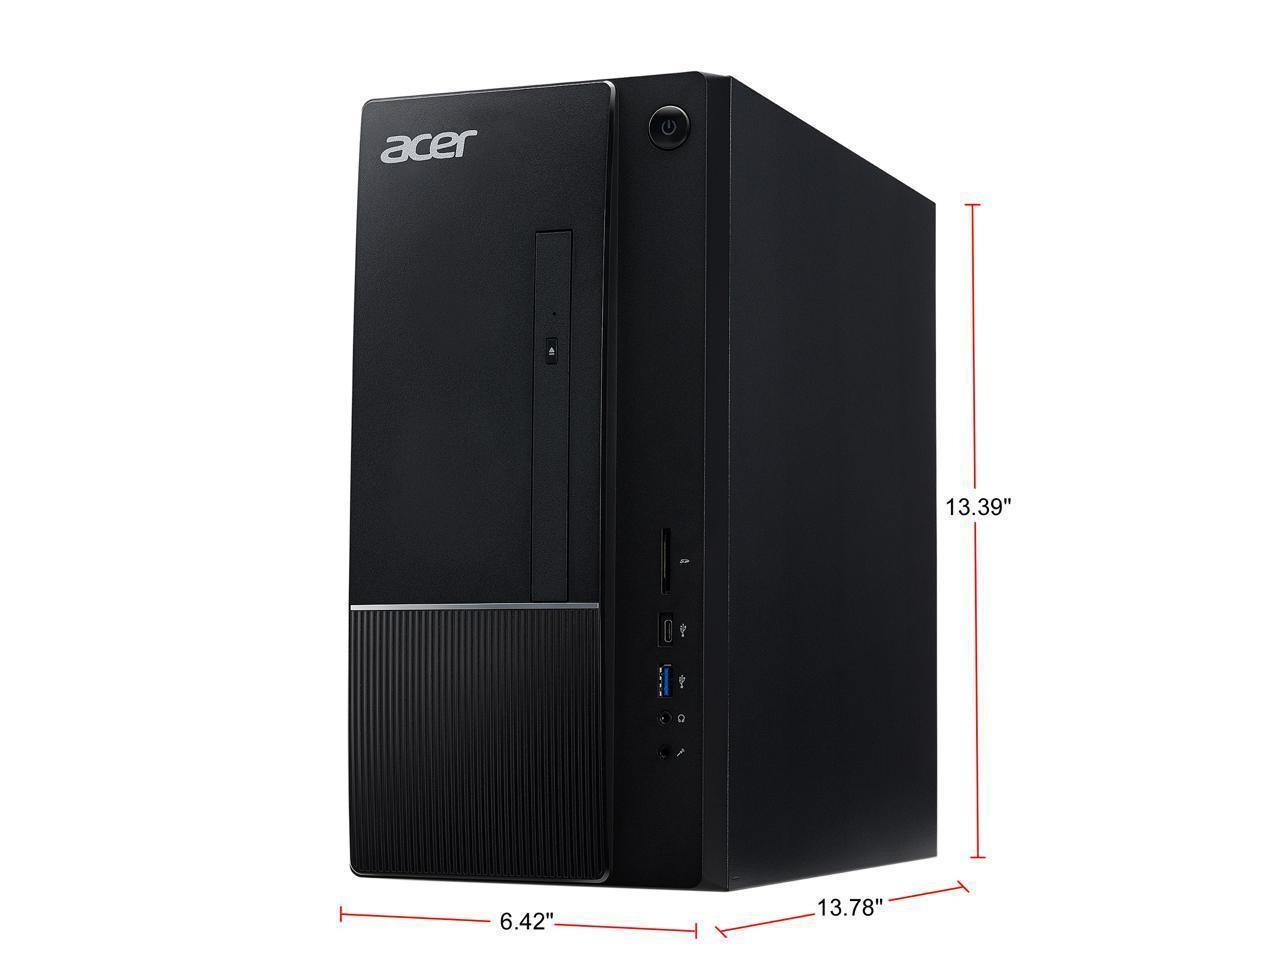 Acer Aspire TC Desktop, 10th Gen Intel Core i5-10400 6-Core Processor